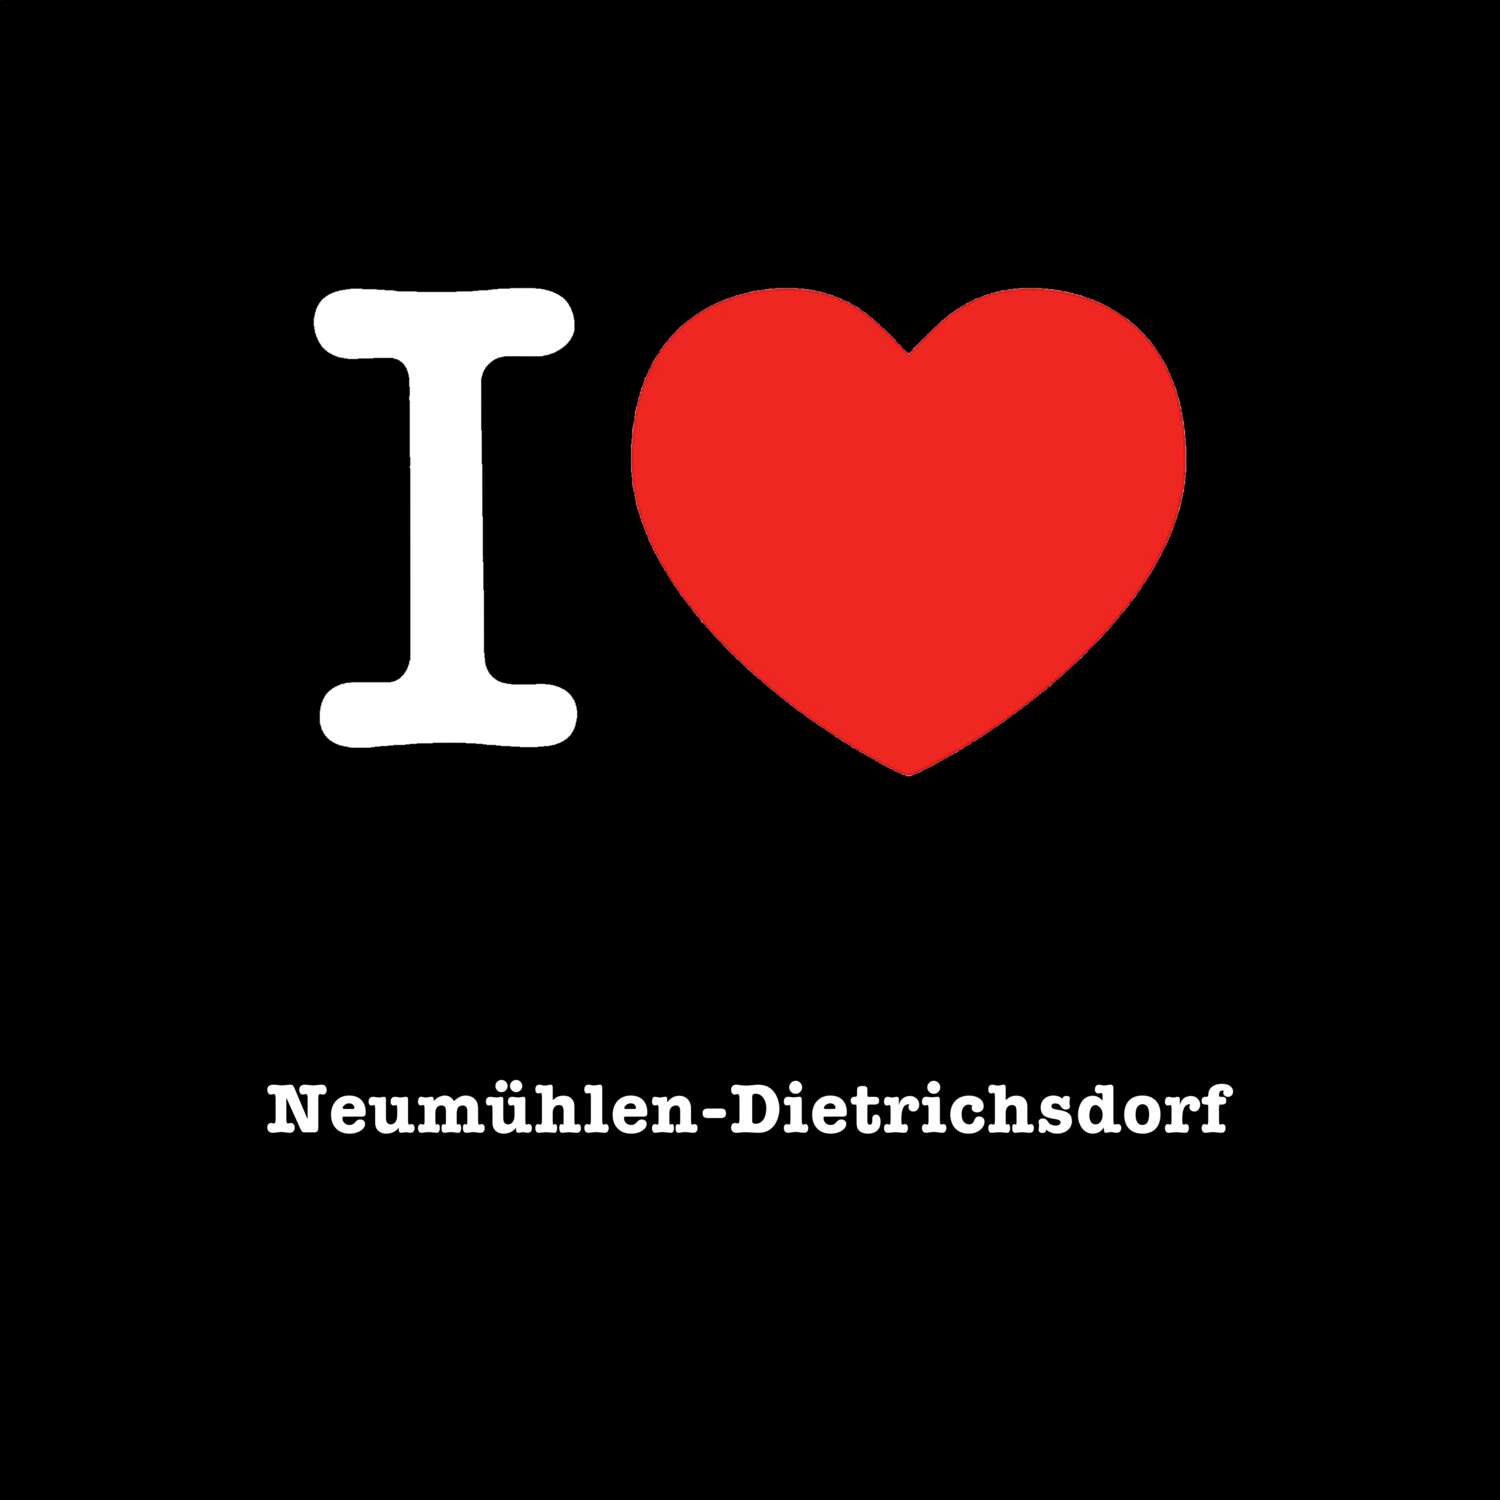 Neumühlen-Dietrichsdorf T-Shirt »I love«